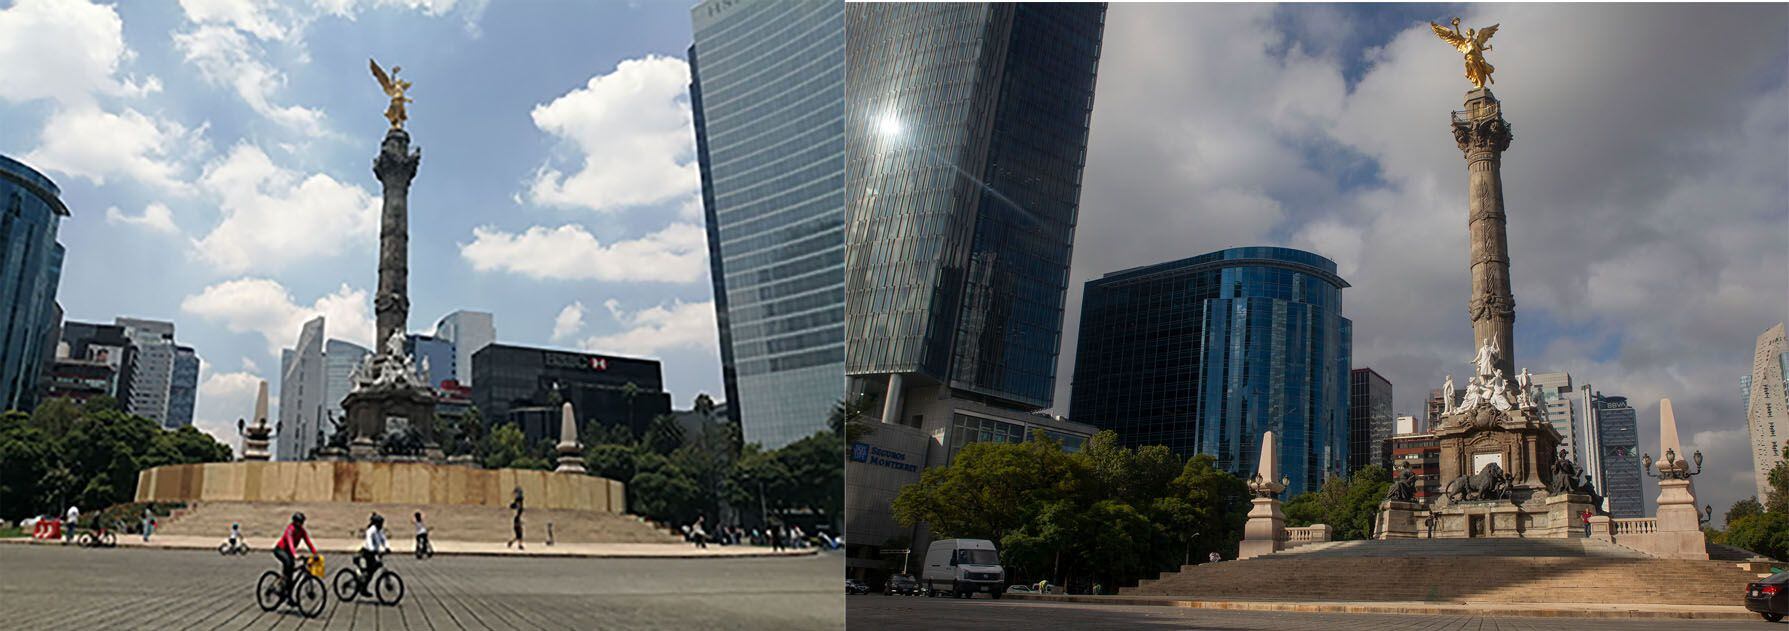 Imagen del ángel de la Independencia donde la fotografía izquierda muestra el paseo en bici dominical con el monumento bardeado en agosto de 2019 y la fotografía de la derecha muestra su reapertura en octubre de 2021.
Foto: Cuartoscuro / Infobae México